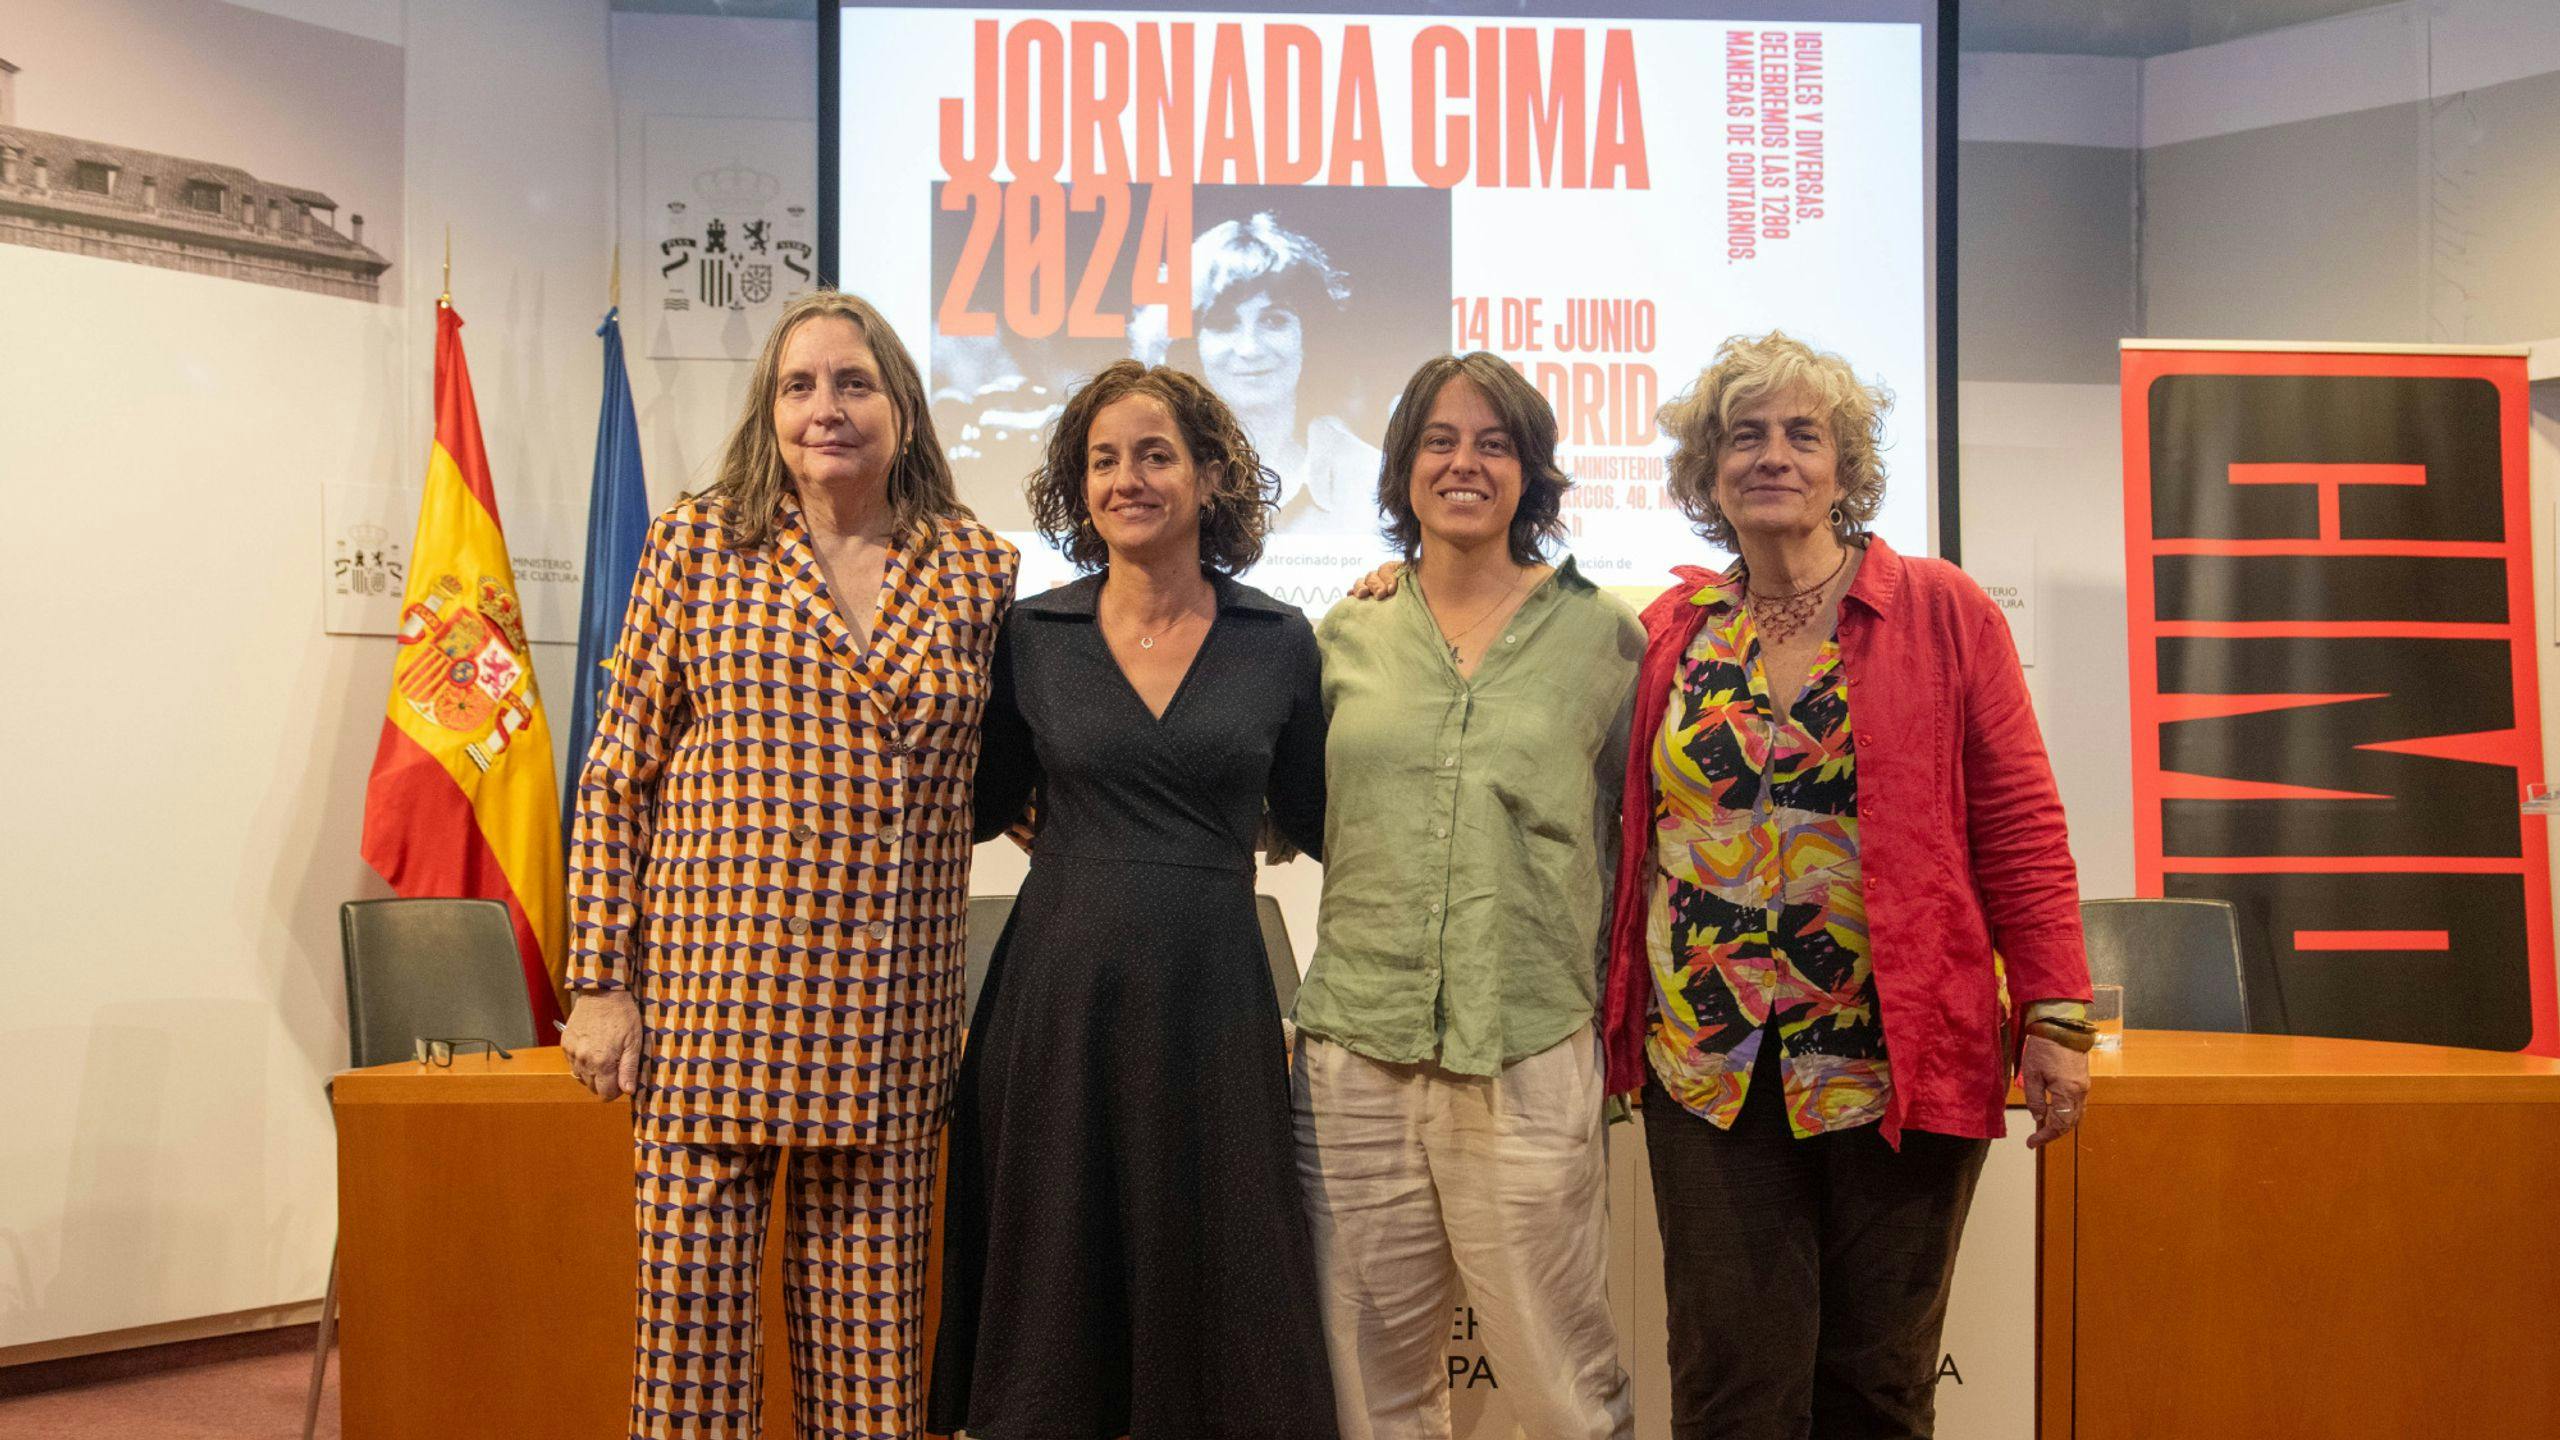 Fotografía de una de las mesas redondas de la Jornada CIMA 2024, con la expresidenta Cristina Andreu a la izquierda de la imagen